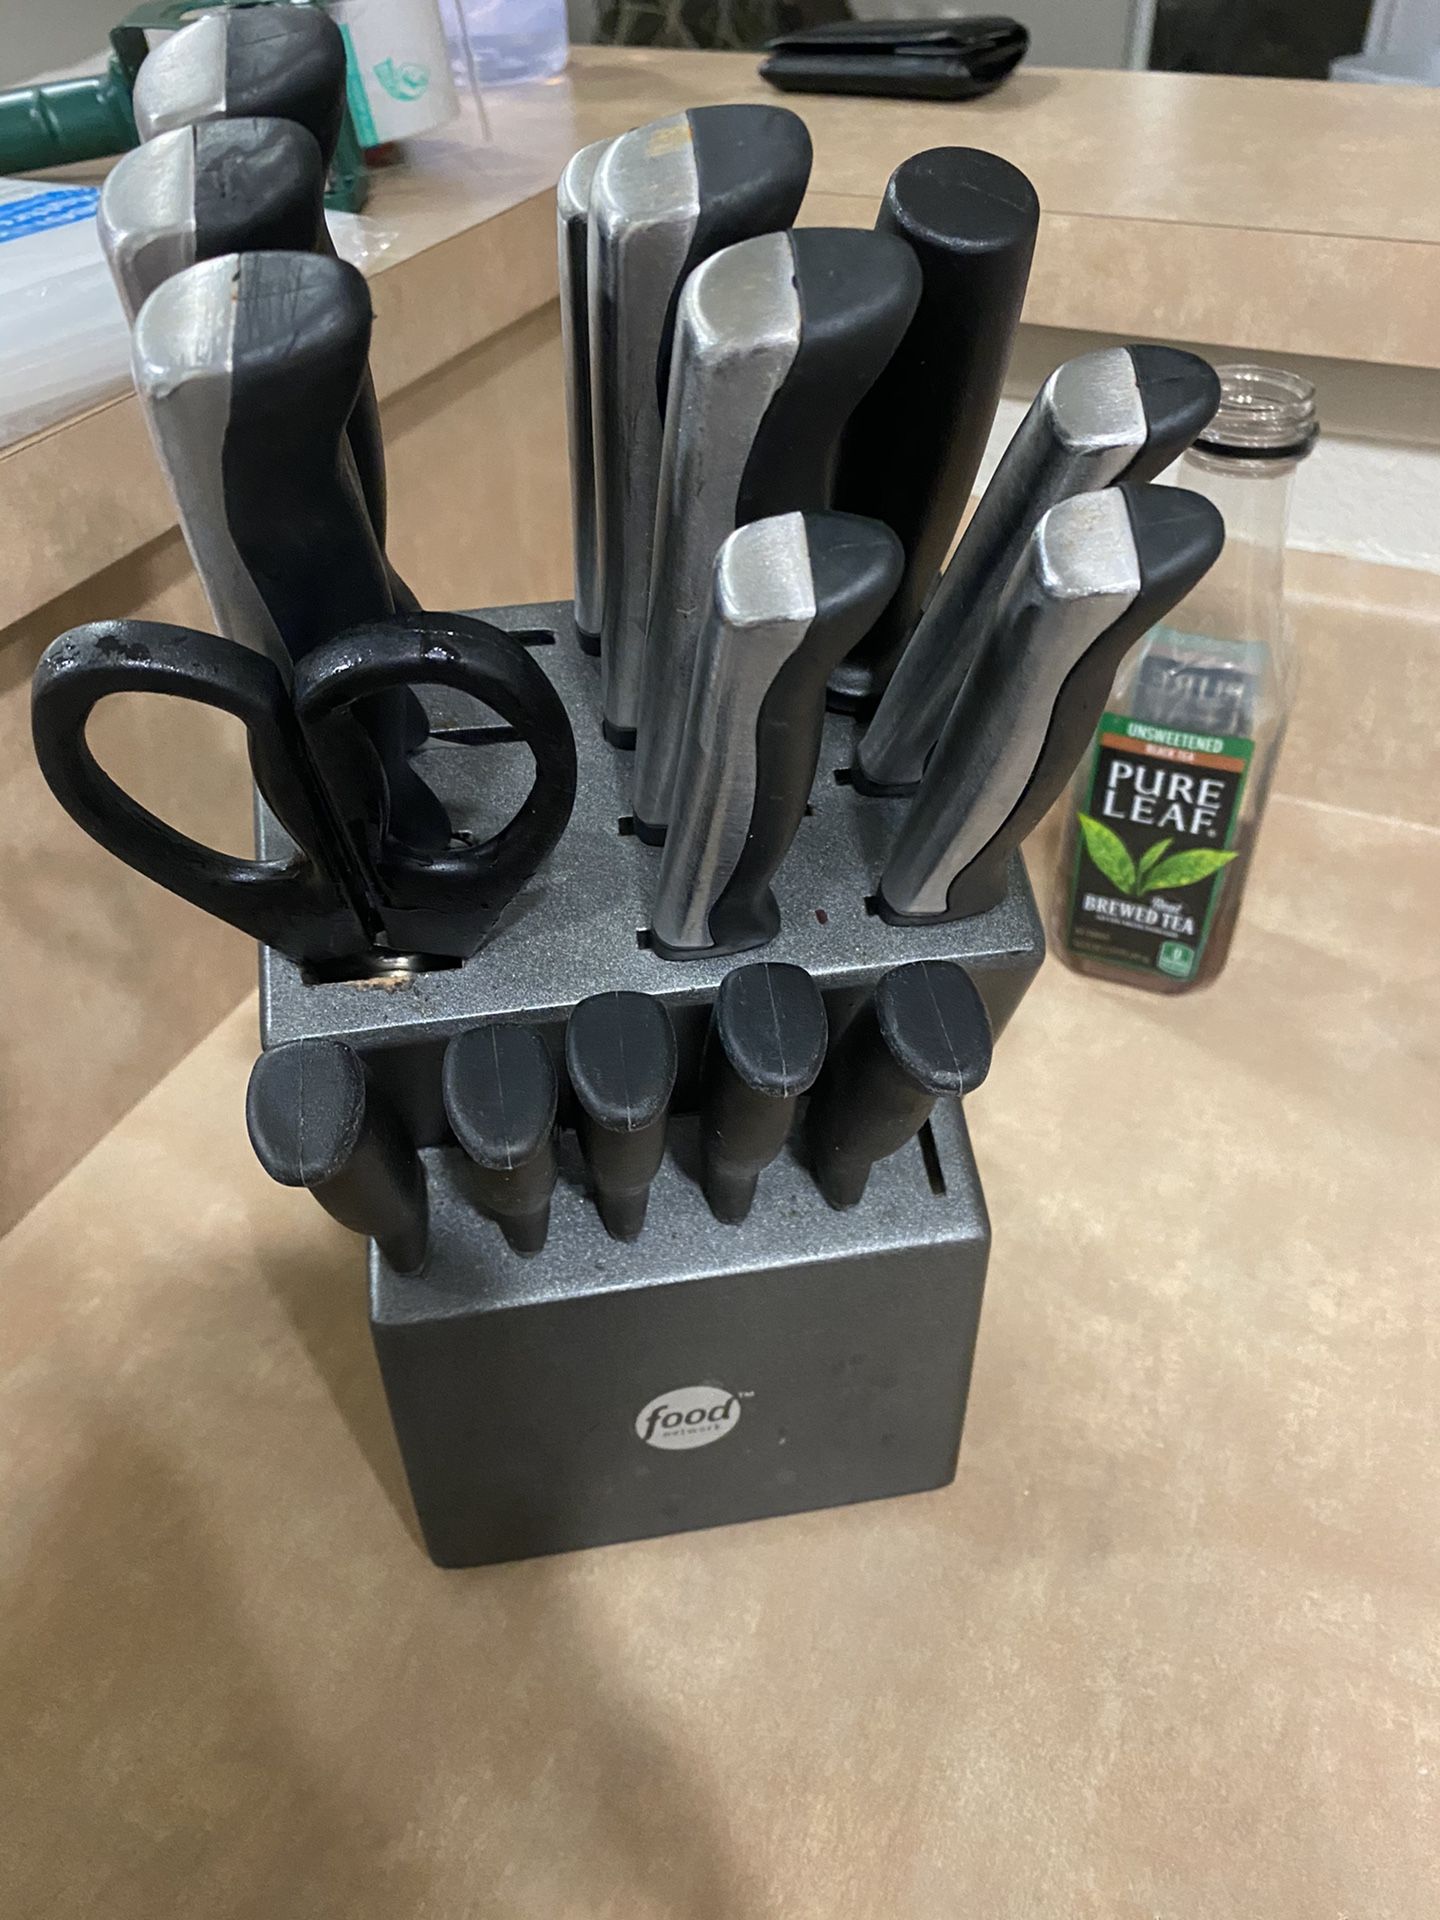 Food Network knife set